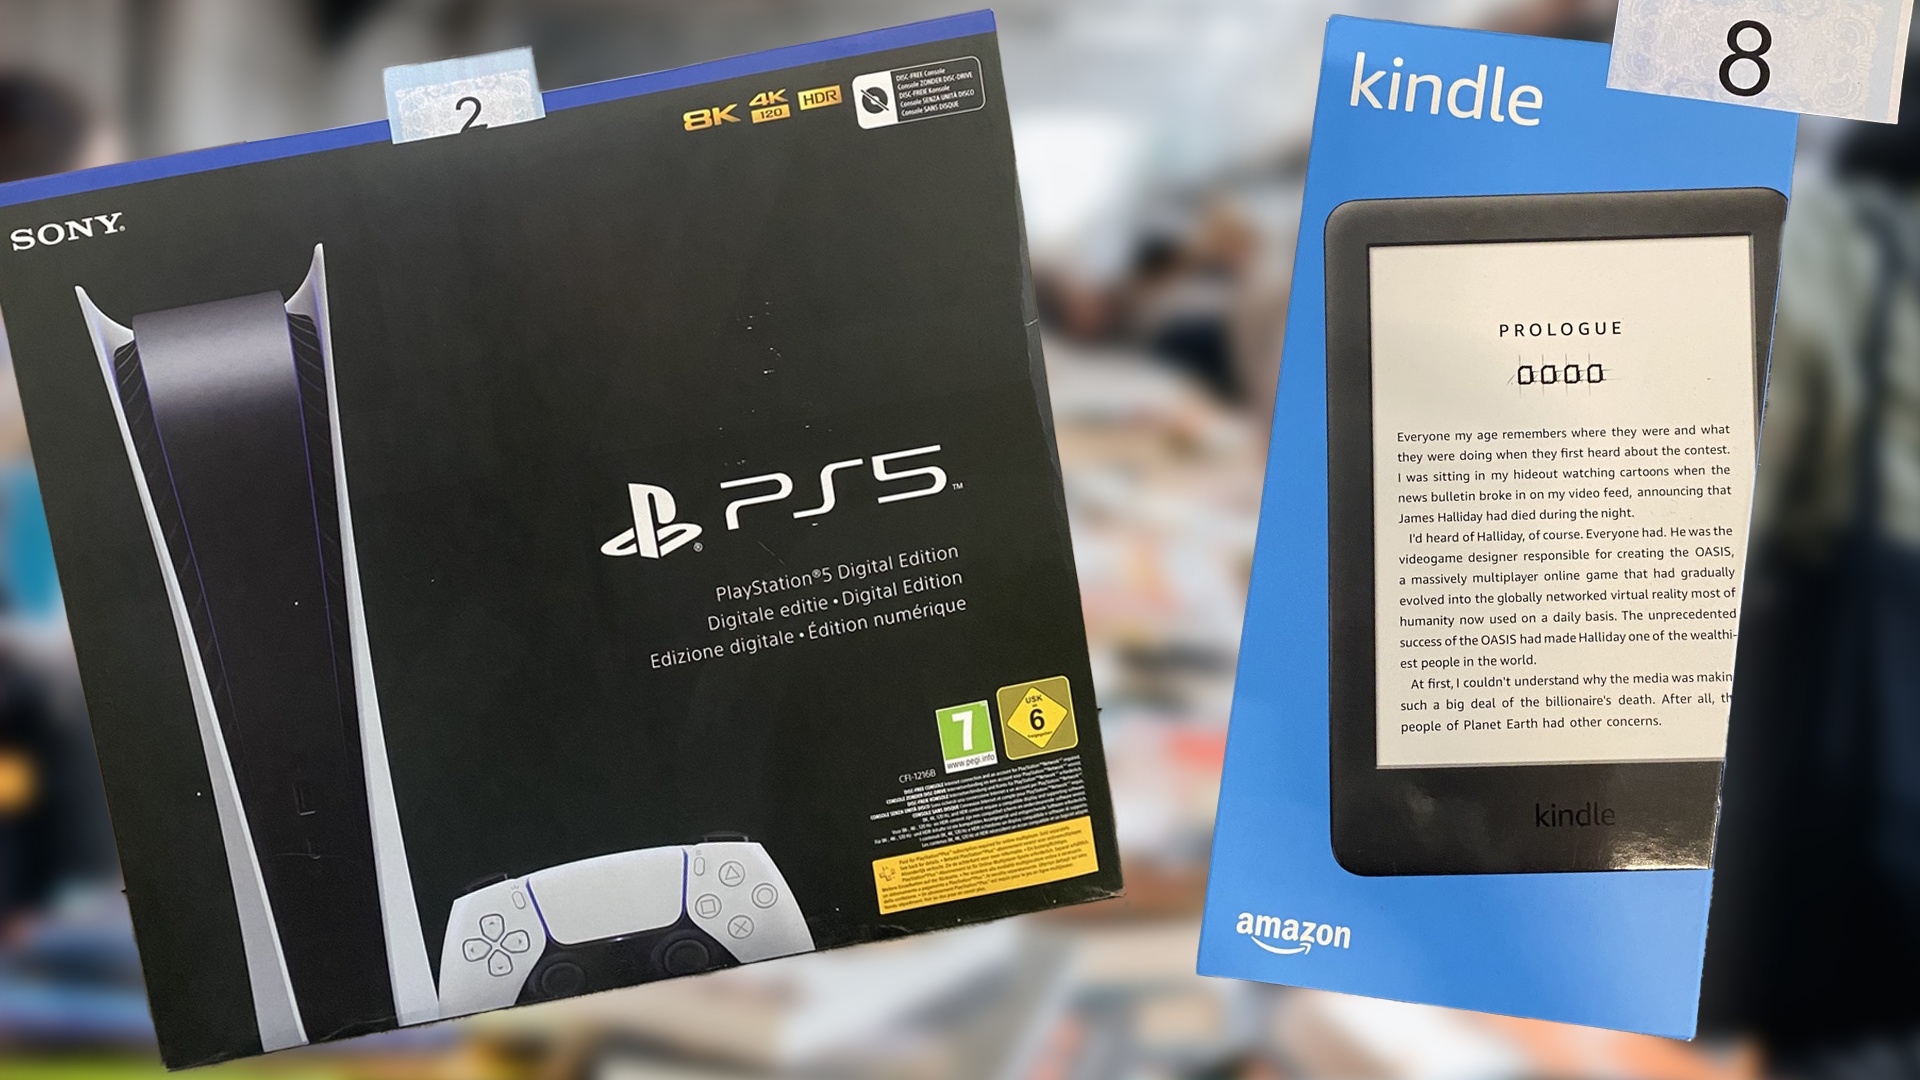 #PlayStation 5, iPhone 12 Pro, Amazon Kindle – und Kisten voller DVDs. Unglaubliche Billig-Aktion mitten in Deutschland